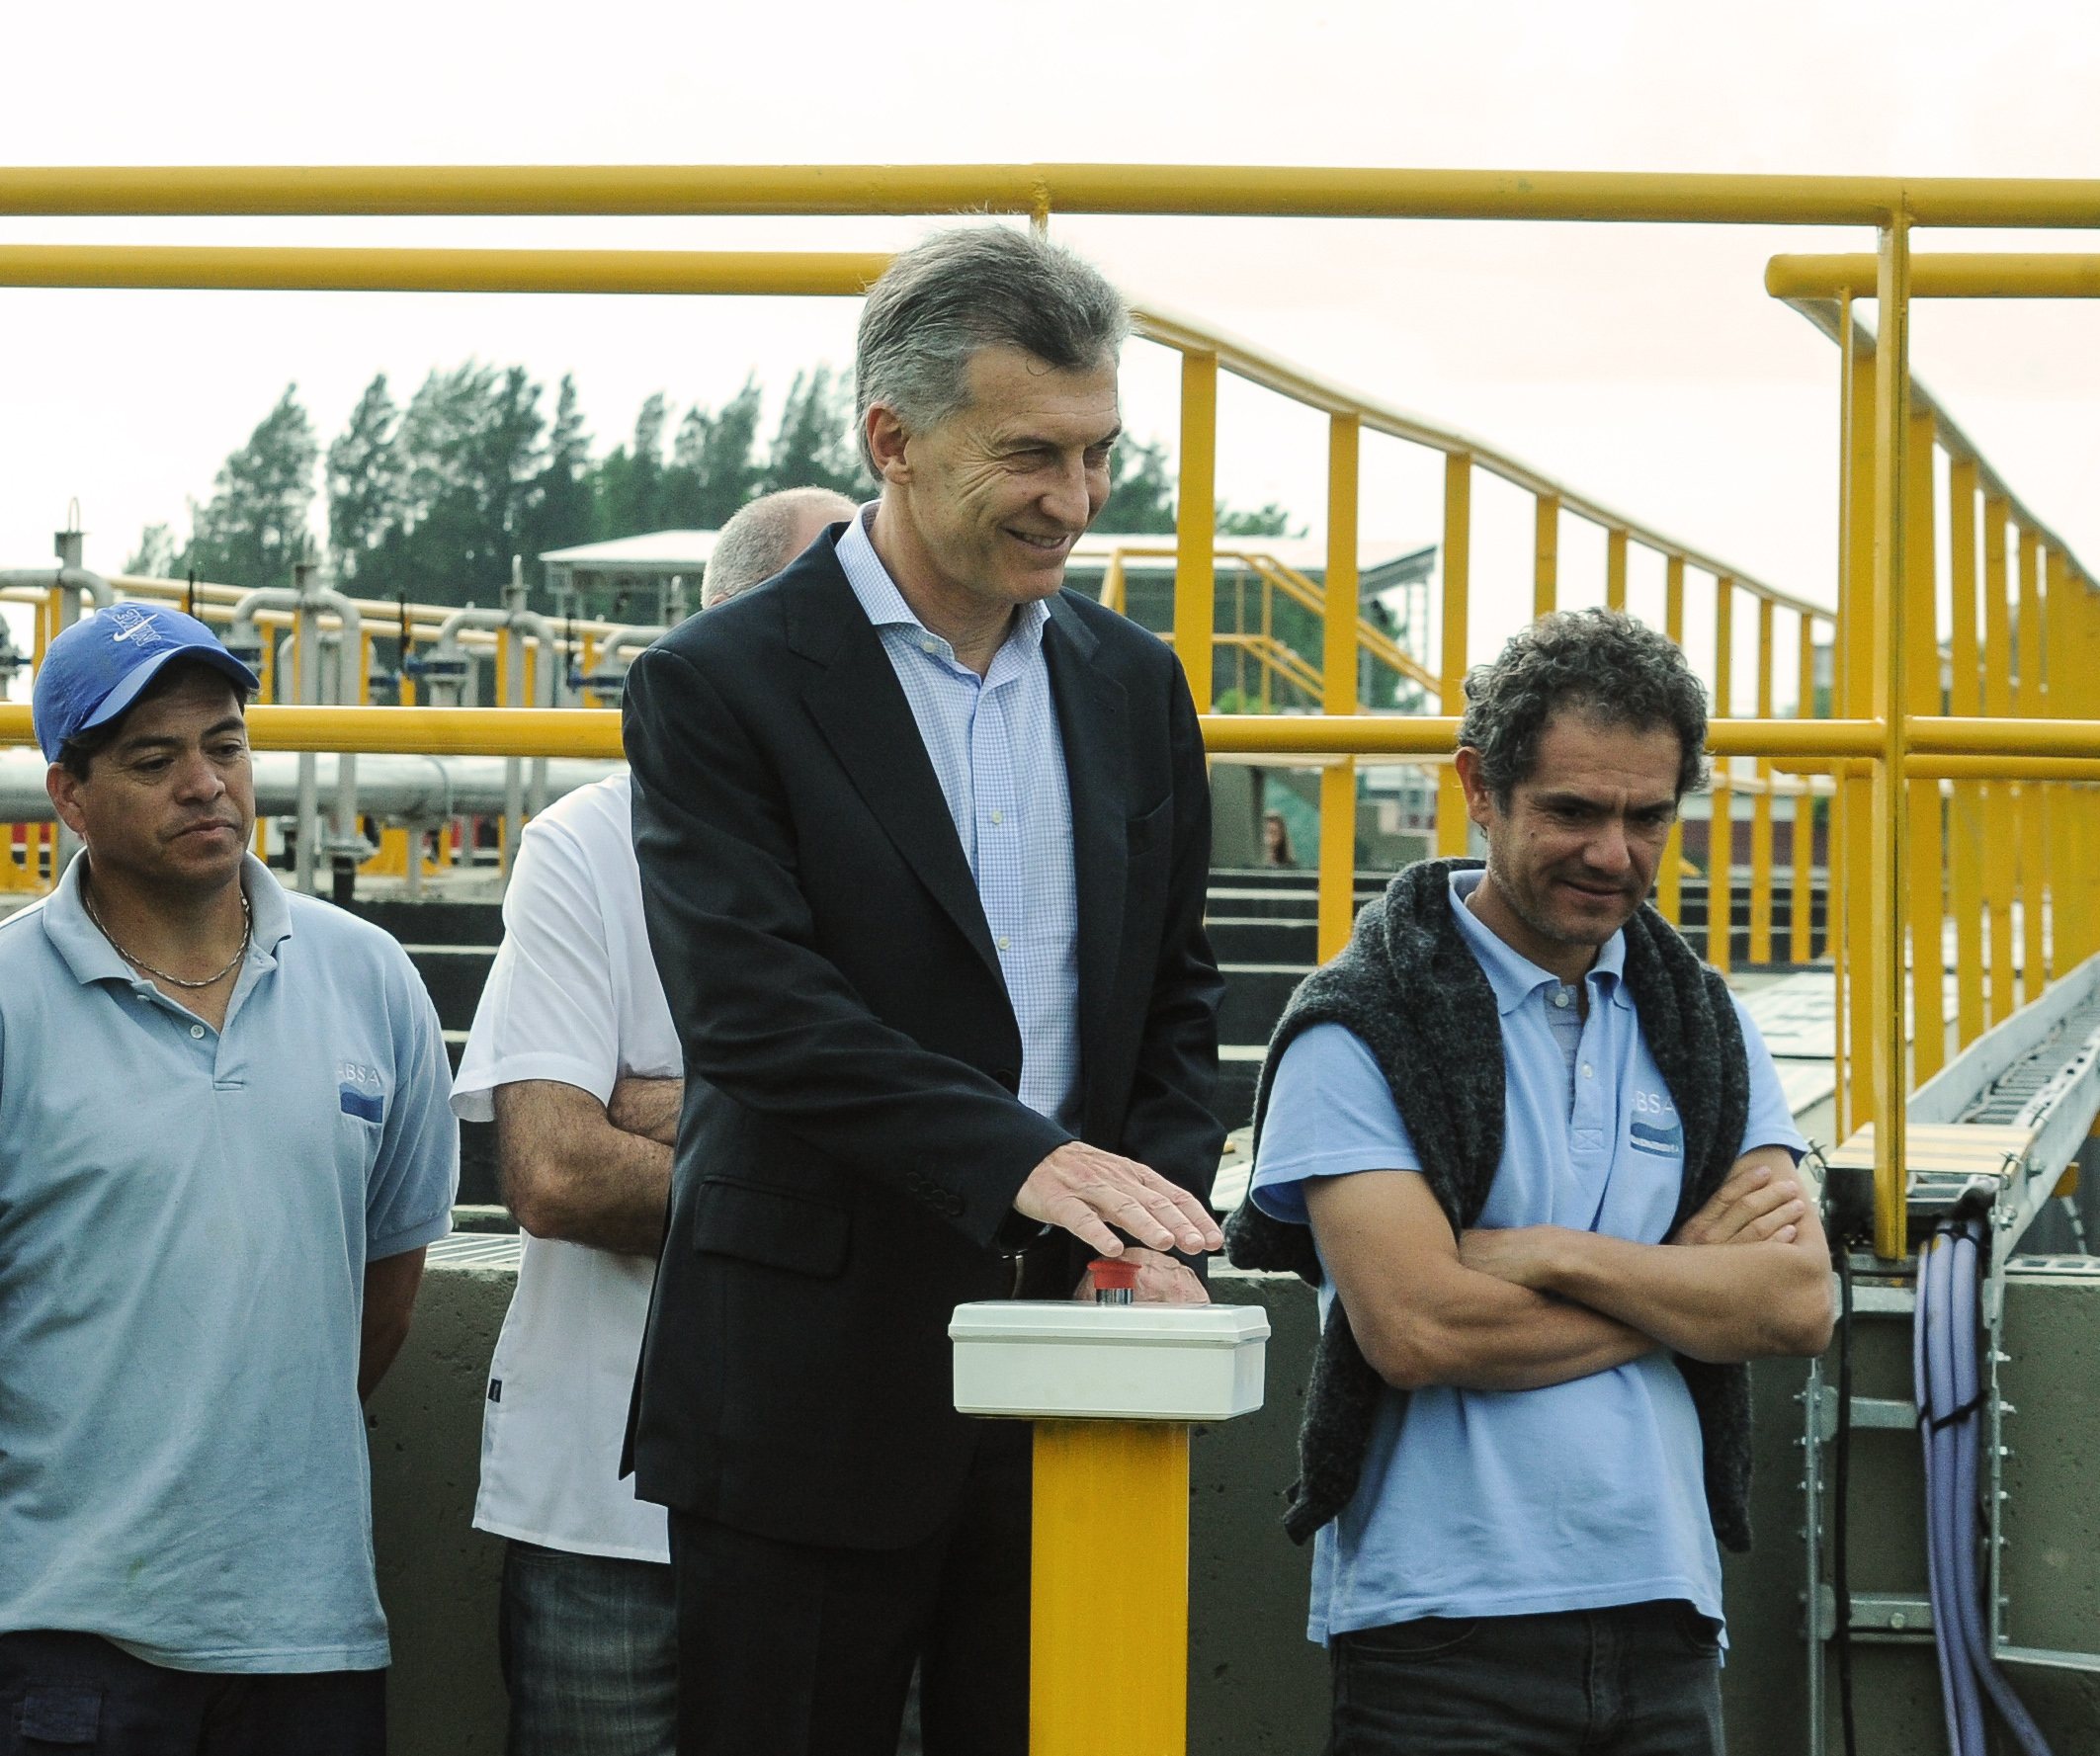 El presidente Macri inauguró dos plantas de saneamiento en el municipio bonaerense de Marcos Paz